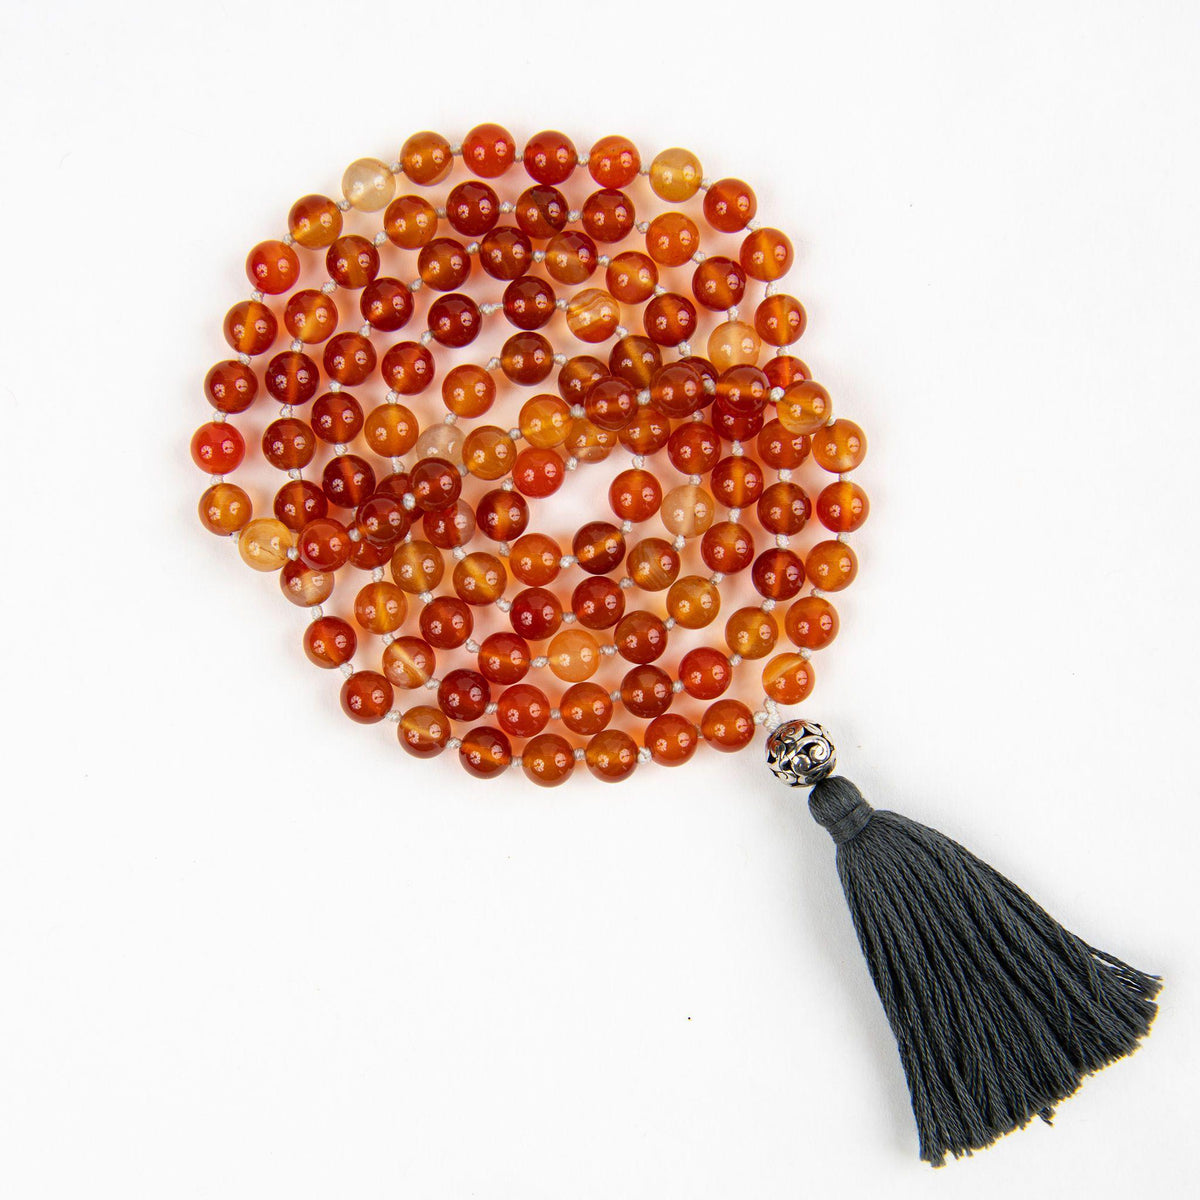 Passion + Creativity Hand-knotted Mala Beads with Carnelian Merakalpa Malas